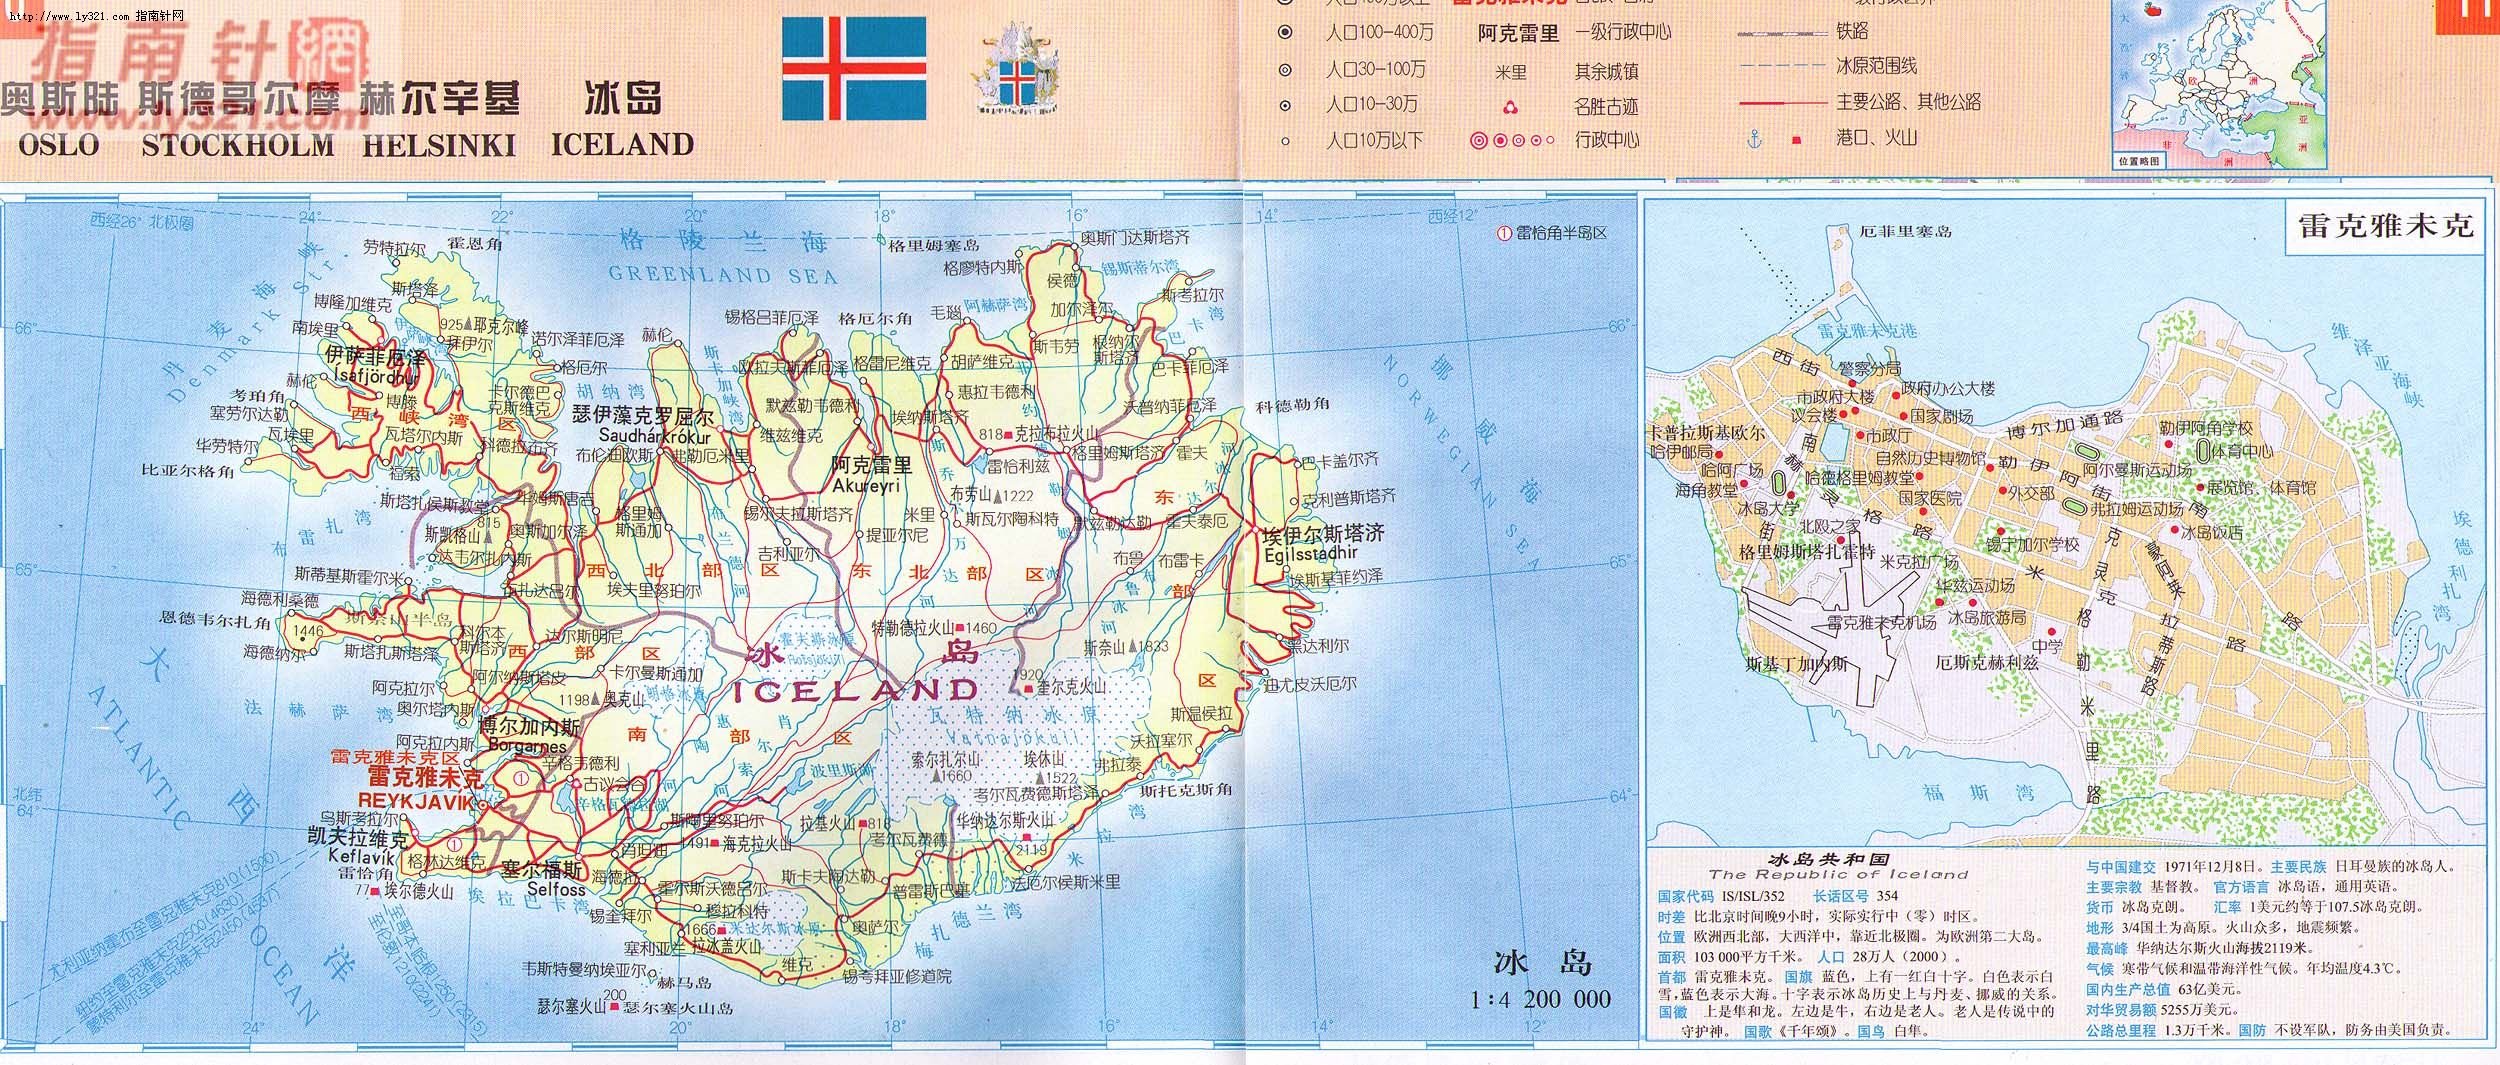 世界地圖-冰島.jpg